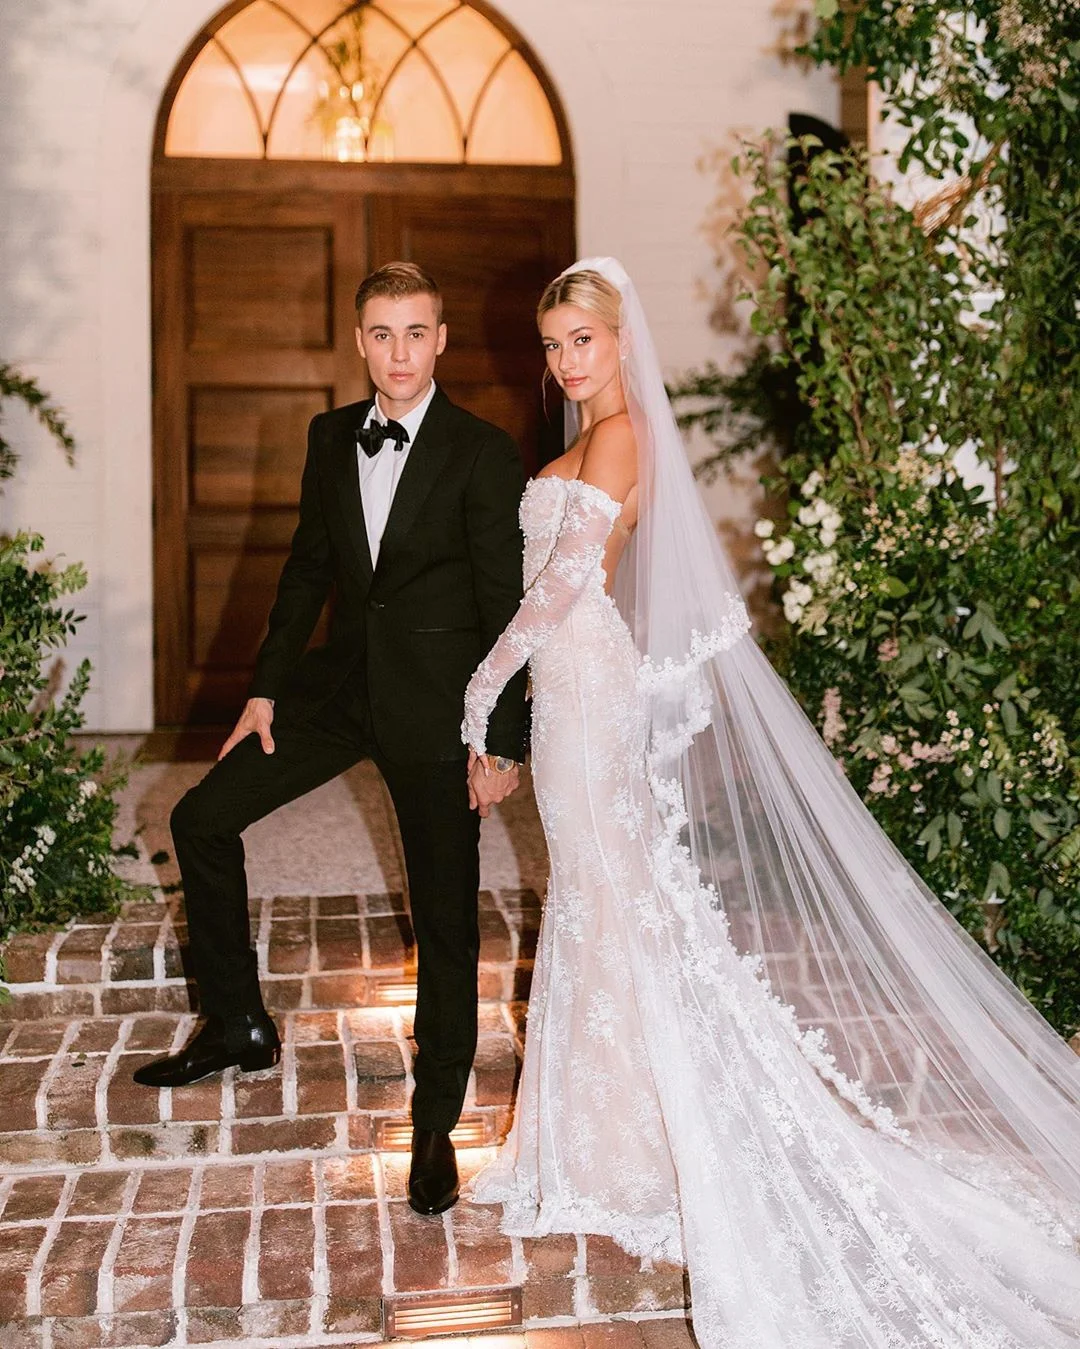 Джастін Бібер опублікував нові фото з весілля, де видно його дружину в білосніжній сукні - фото 454813